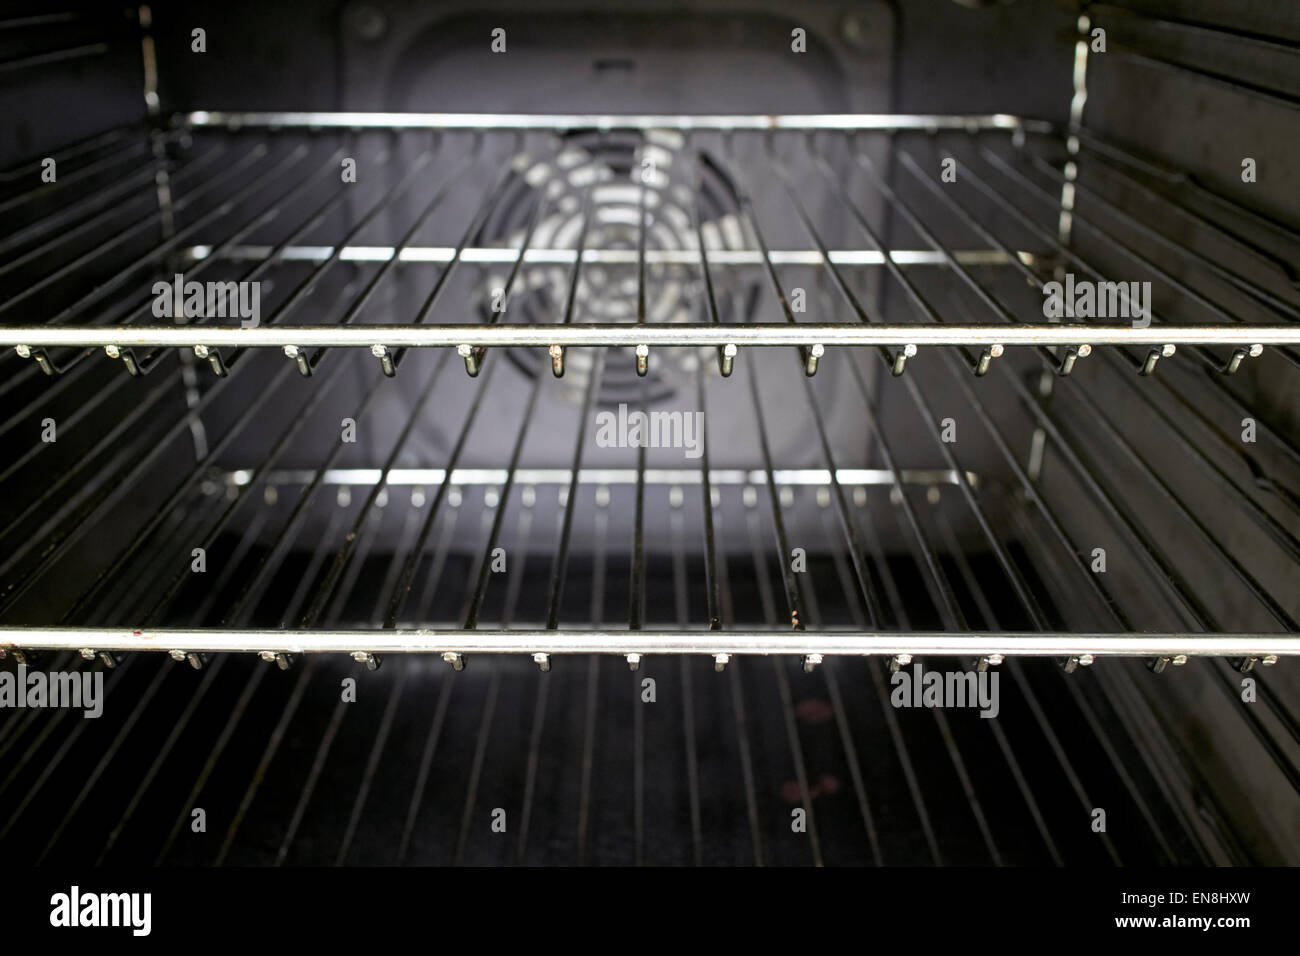 Interior de una casa cocina horno con estantes de rejilla de metal limpio Foto de stock